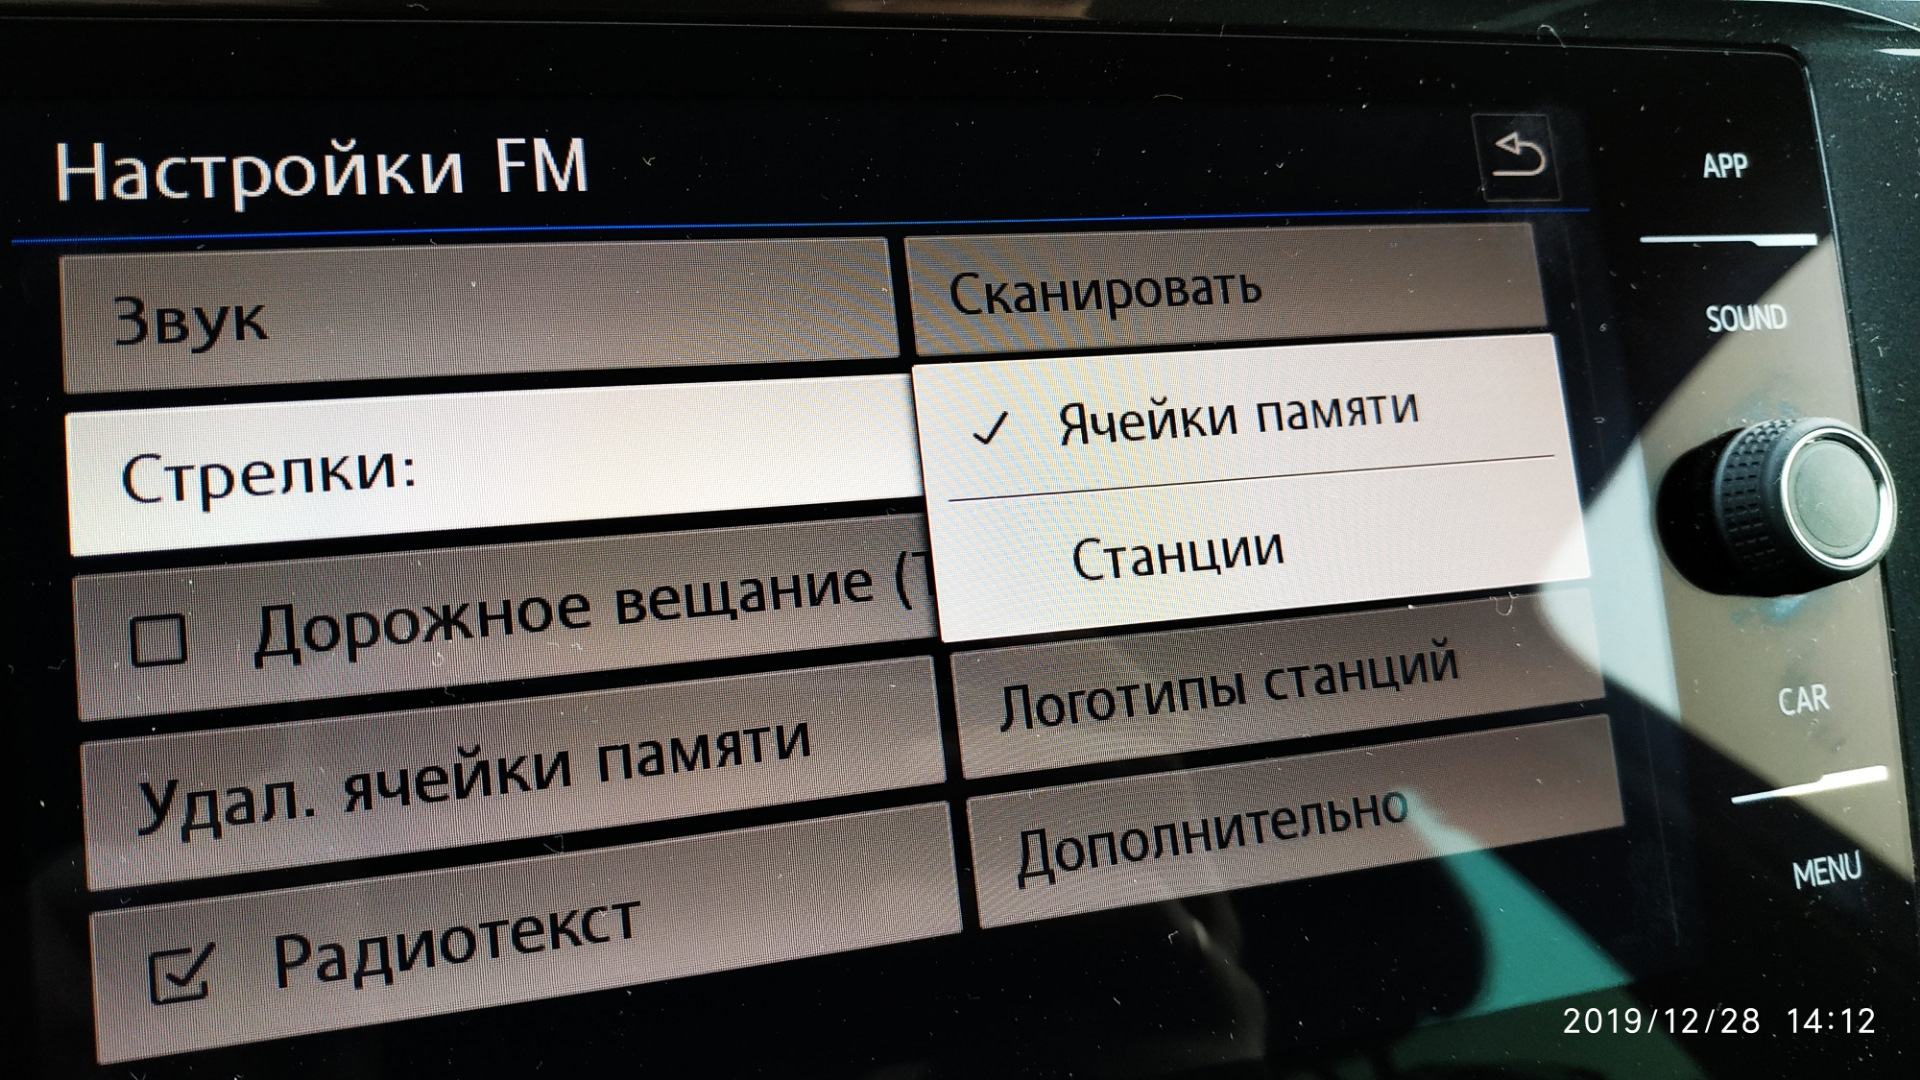 Как переключить с радио на каналы